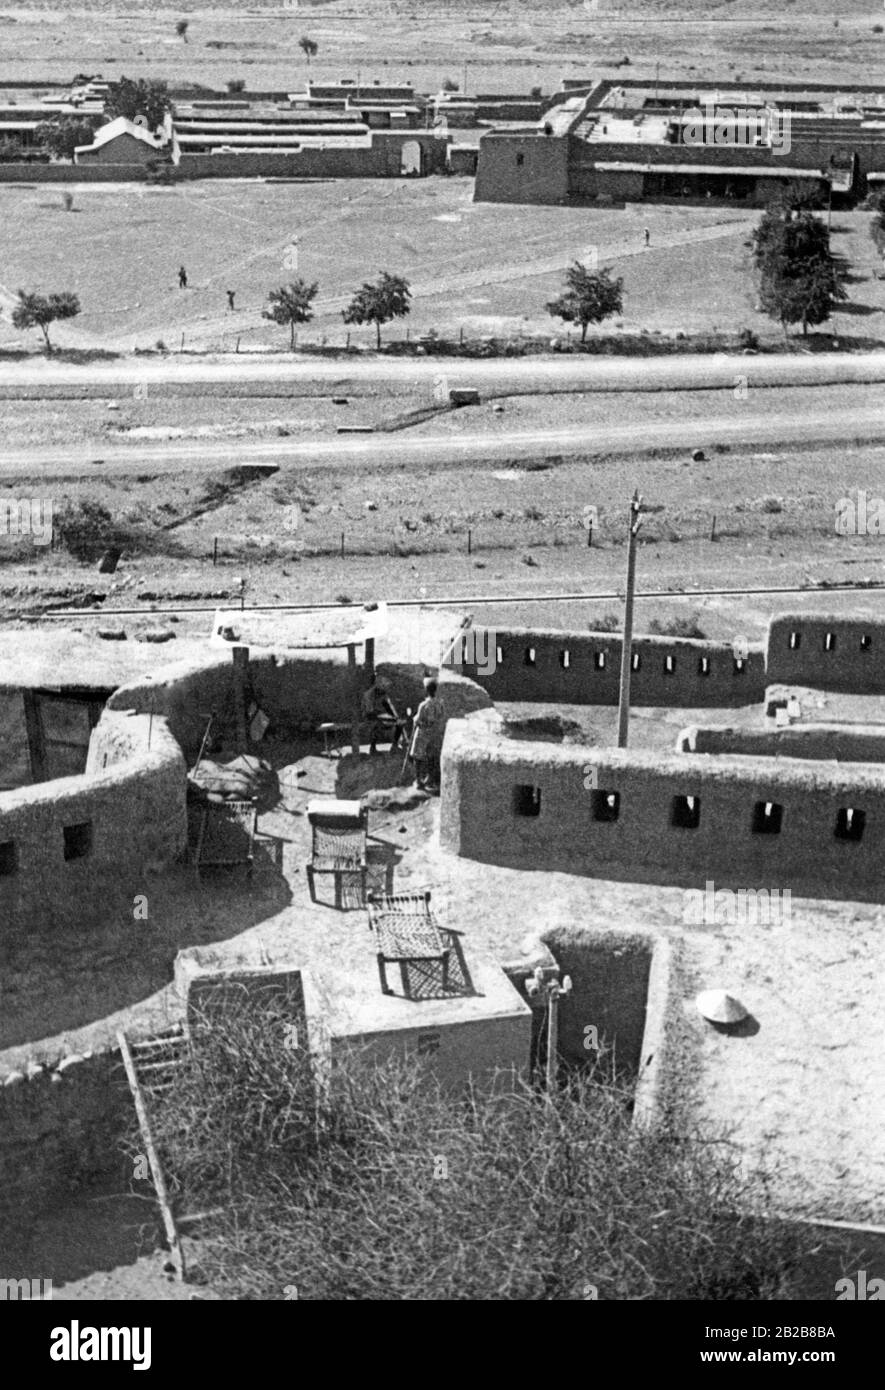 Das Jamrud Fort, ein typisches britisches Fort an der Nordwestgrenze Indiens. Hier übten die muslimischen Ureinwohner regelmäßig Rebellion gegen die britischen Besatzungstruppen aus. Stockfoto